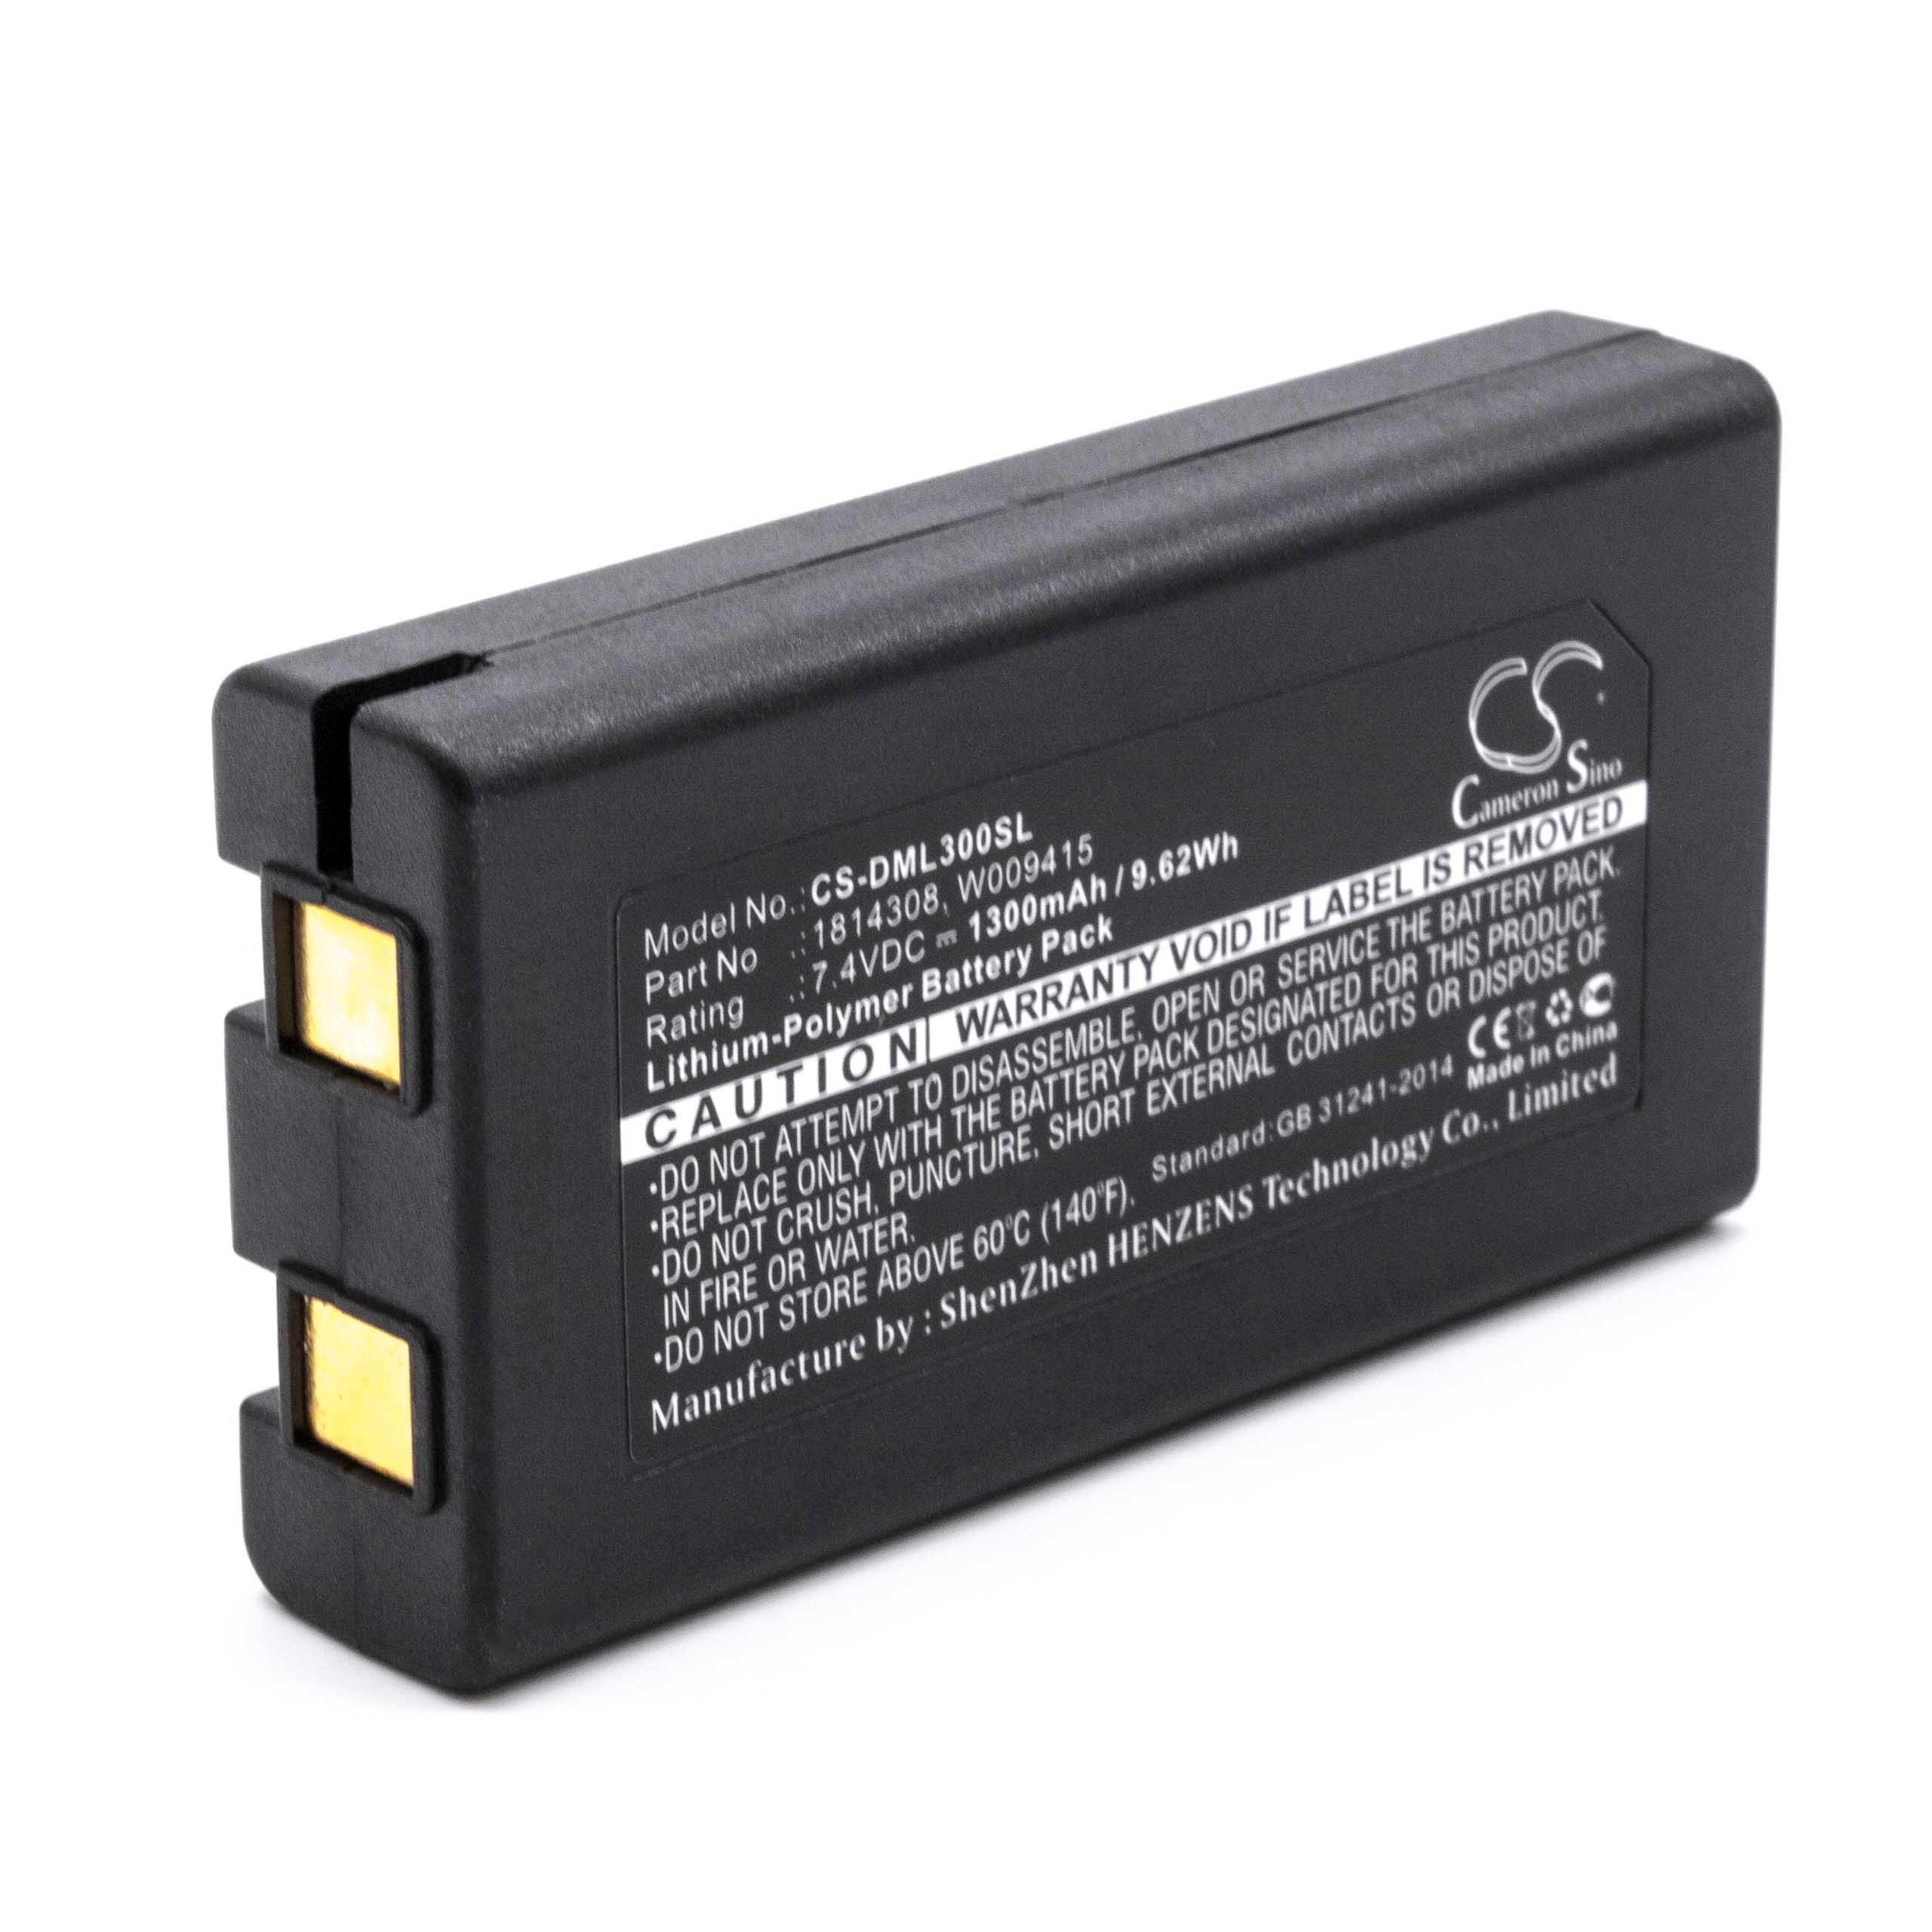 Batterie remplace Dymo W009415, 643463, 1814308 pour imprimante - 1300mAh 7,4V Li-polymère